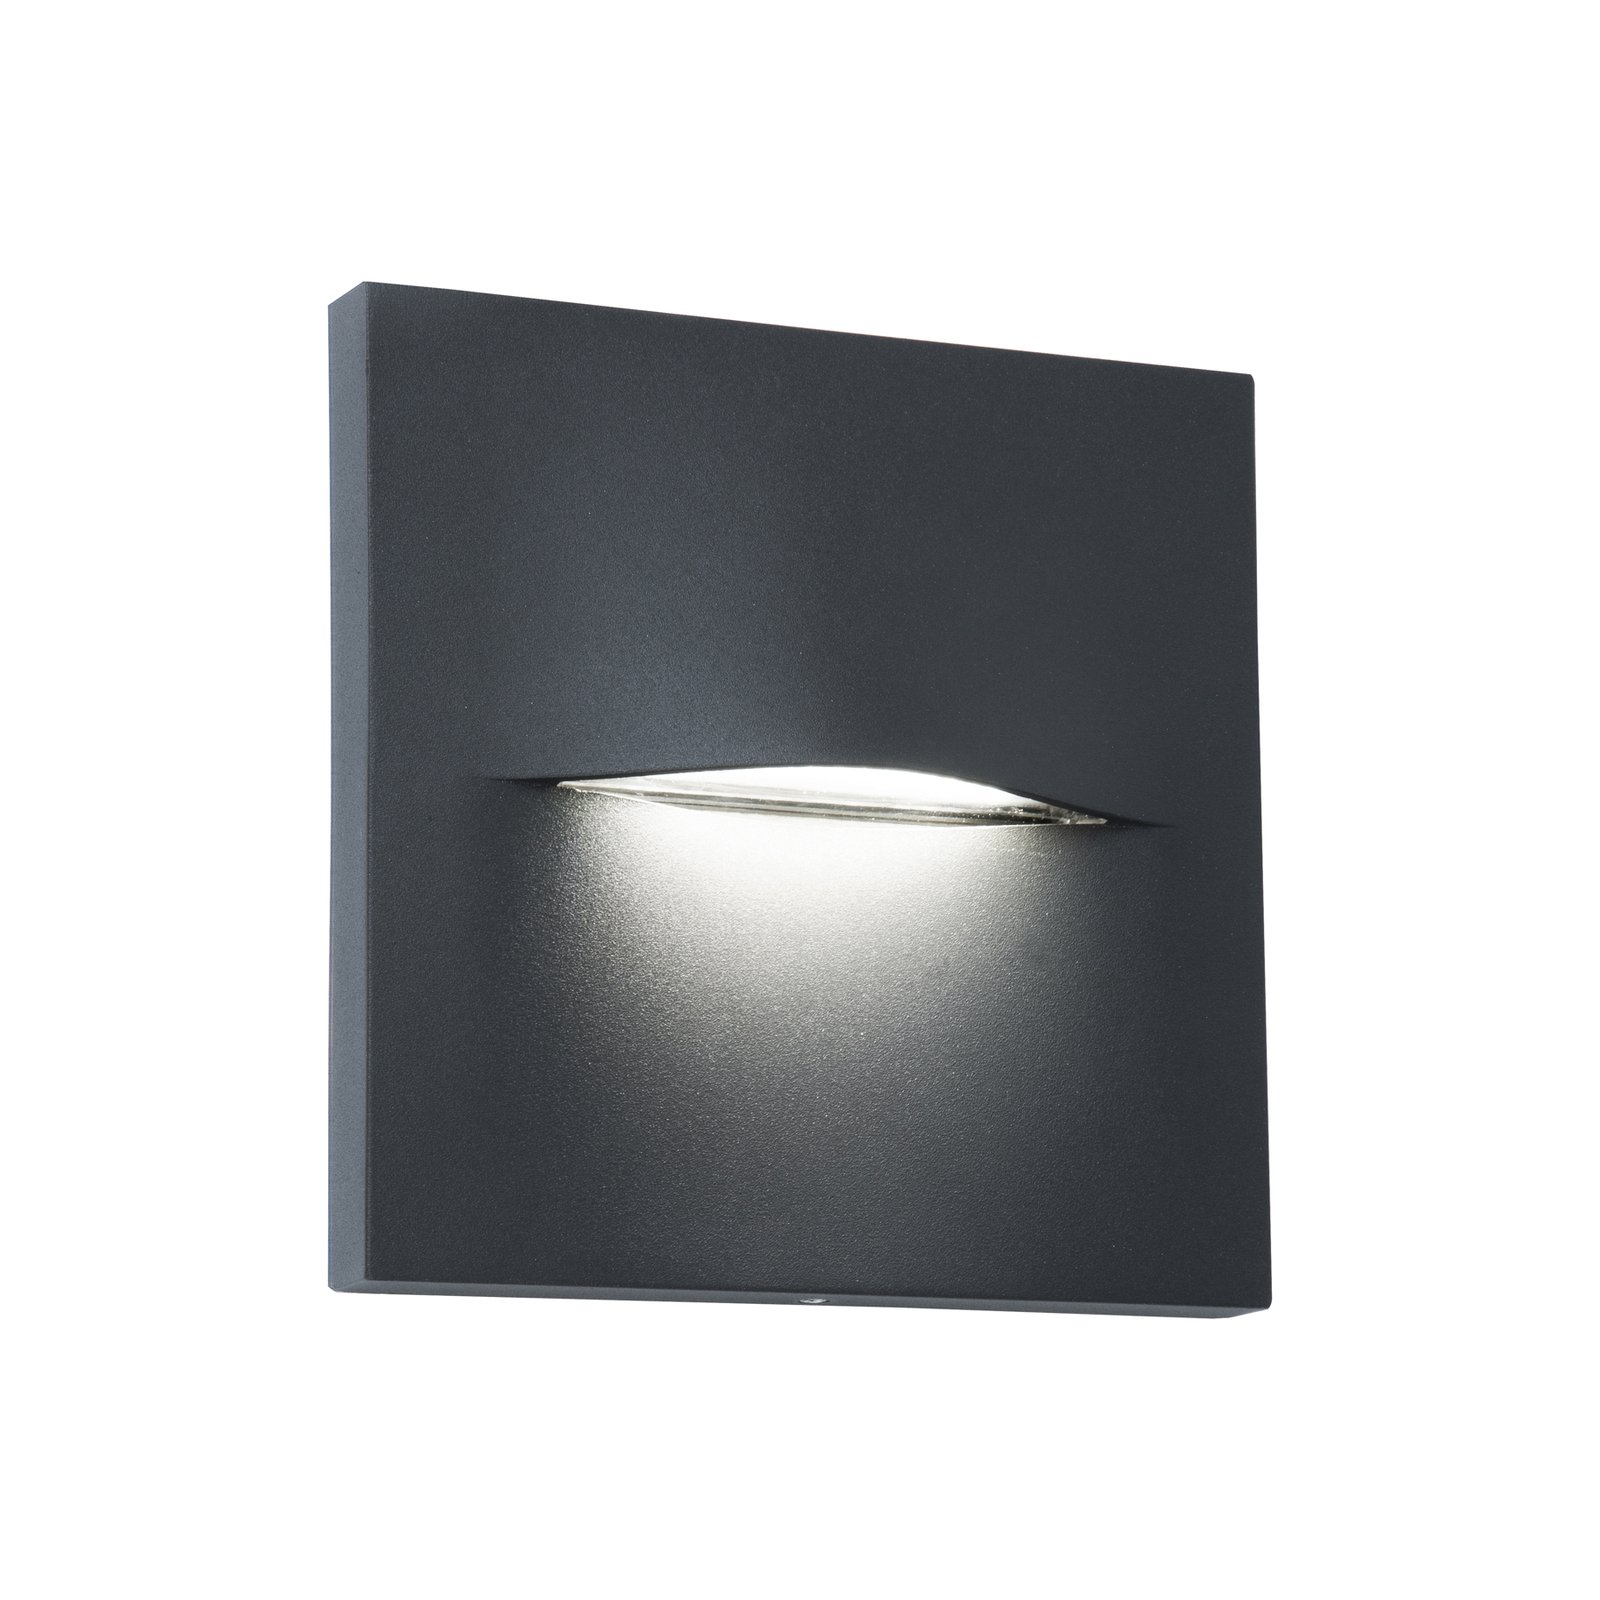 LED-ulkoseinävalaisin Vita, tummanharmaa, 14 x 14 cm